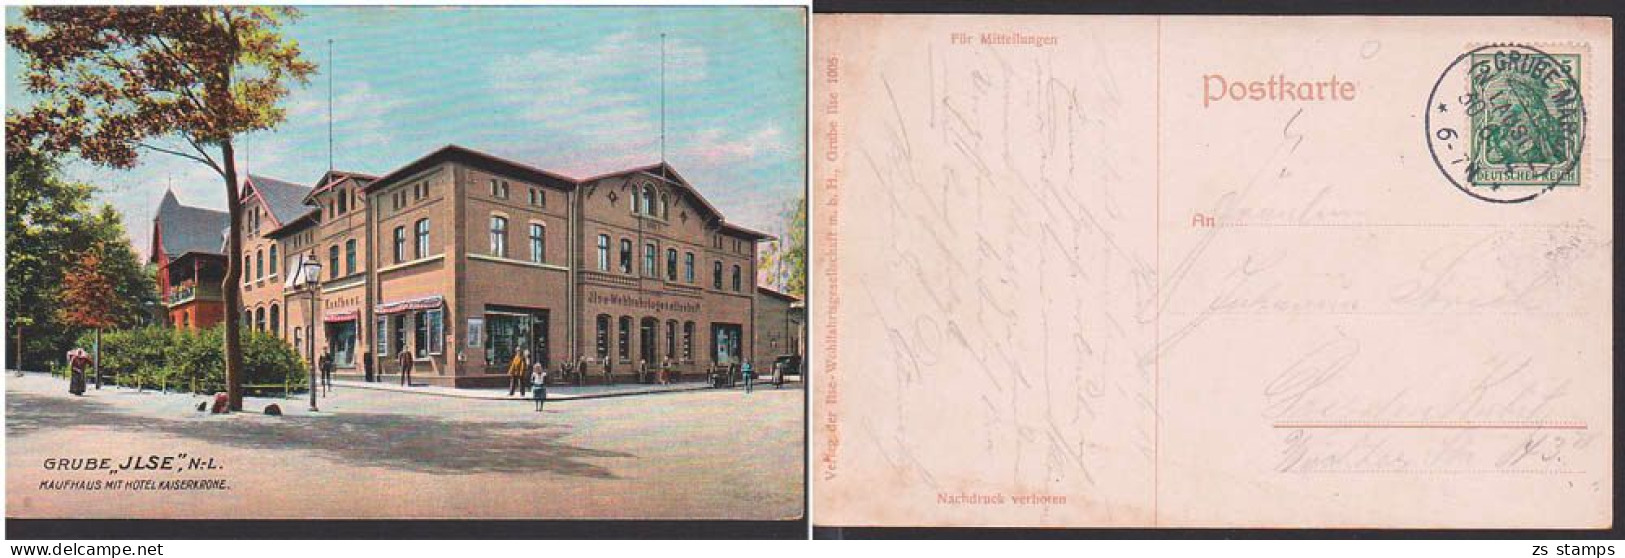 Grube "ILSE" Niederlausitz Kaufhaus Mit Hotel Kaiserkrone , OSt. Grube Marga 30.6.1914 - Senftenberg